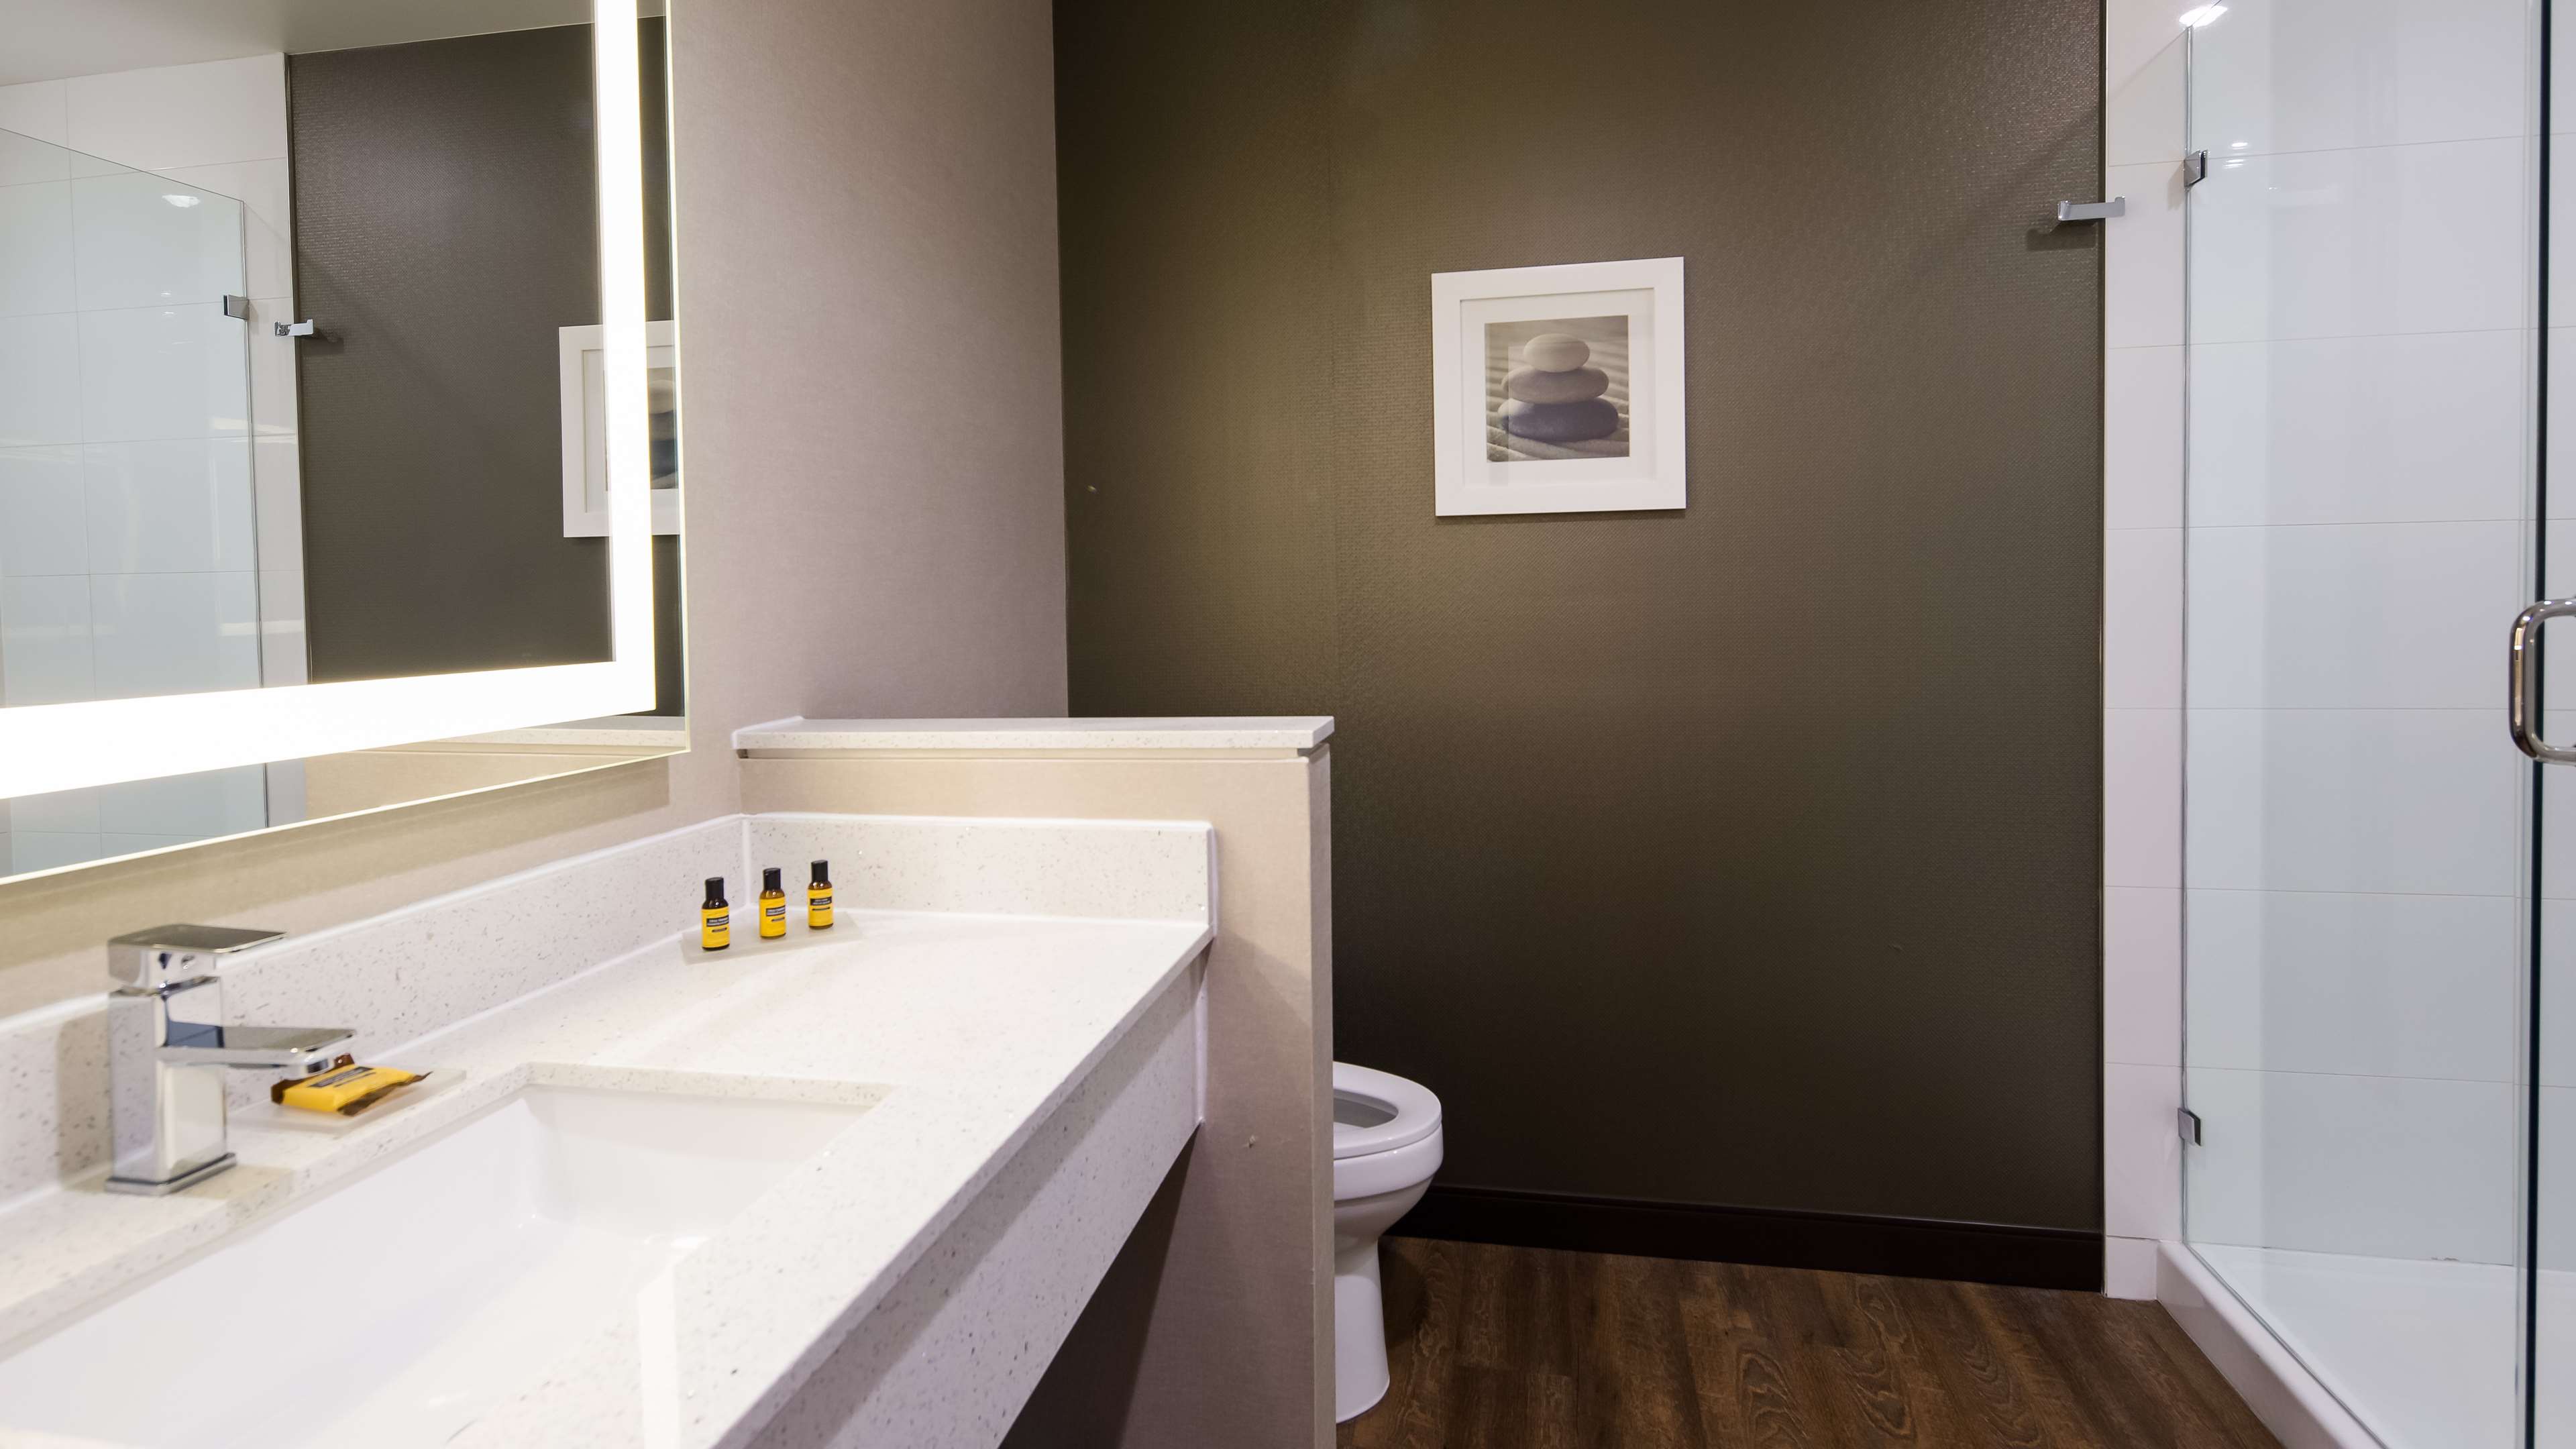 Guest Bathroom - shower Best Western Plus Hinton Inn & Suites Hinton (780)817-7000